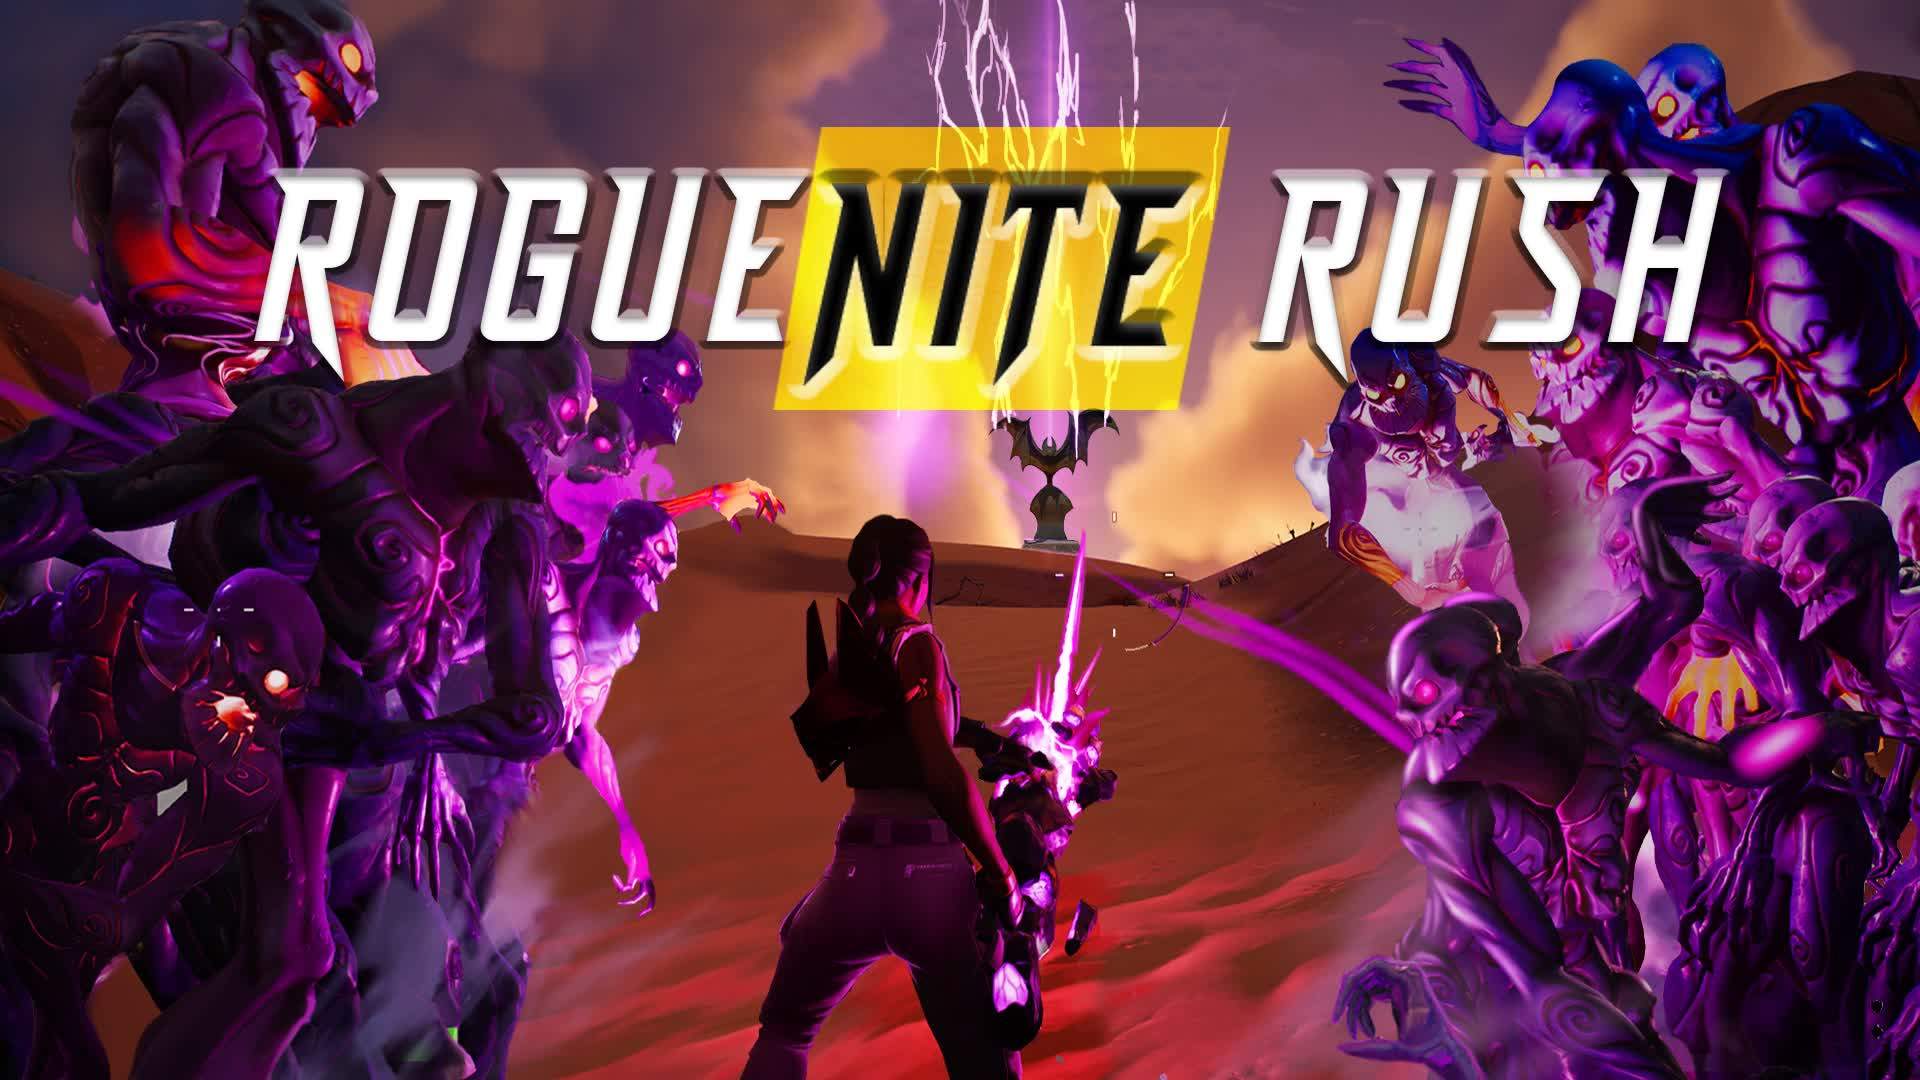 RogueNite Rush